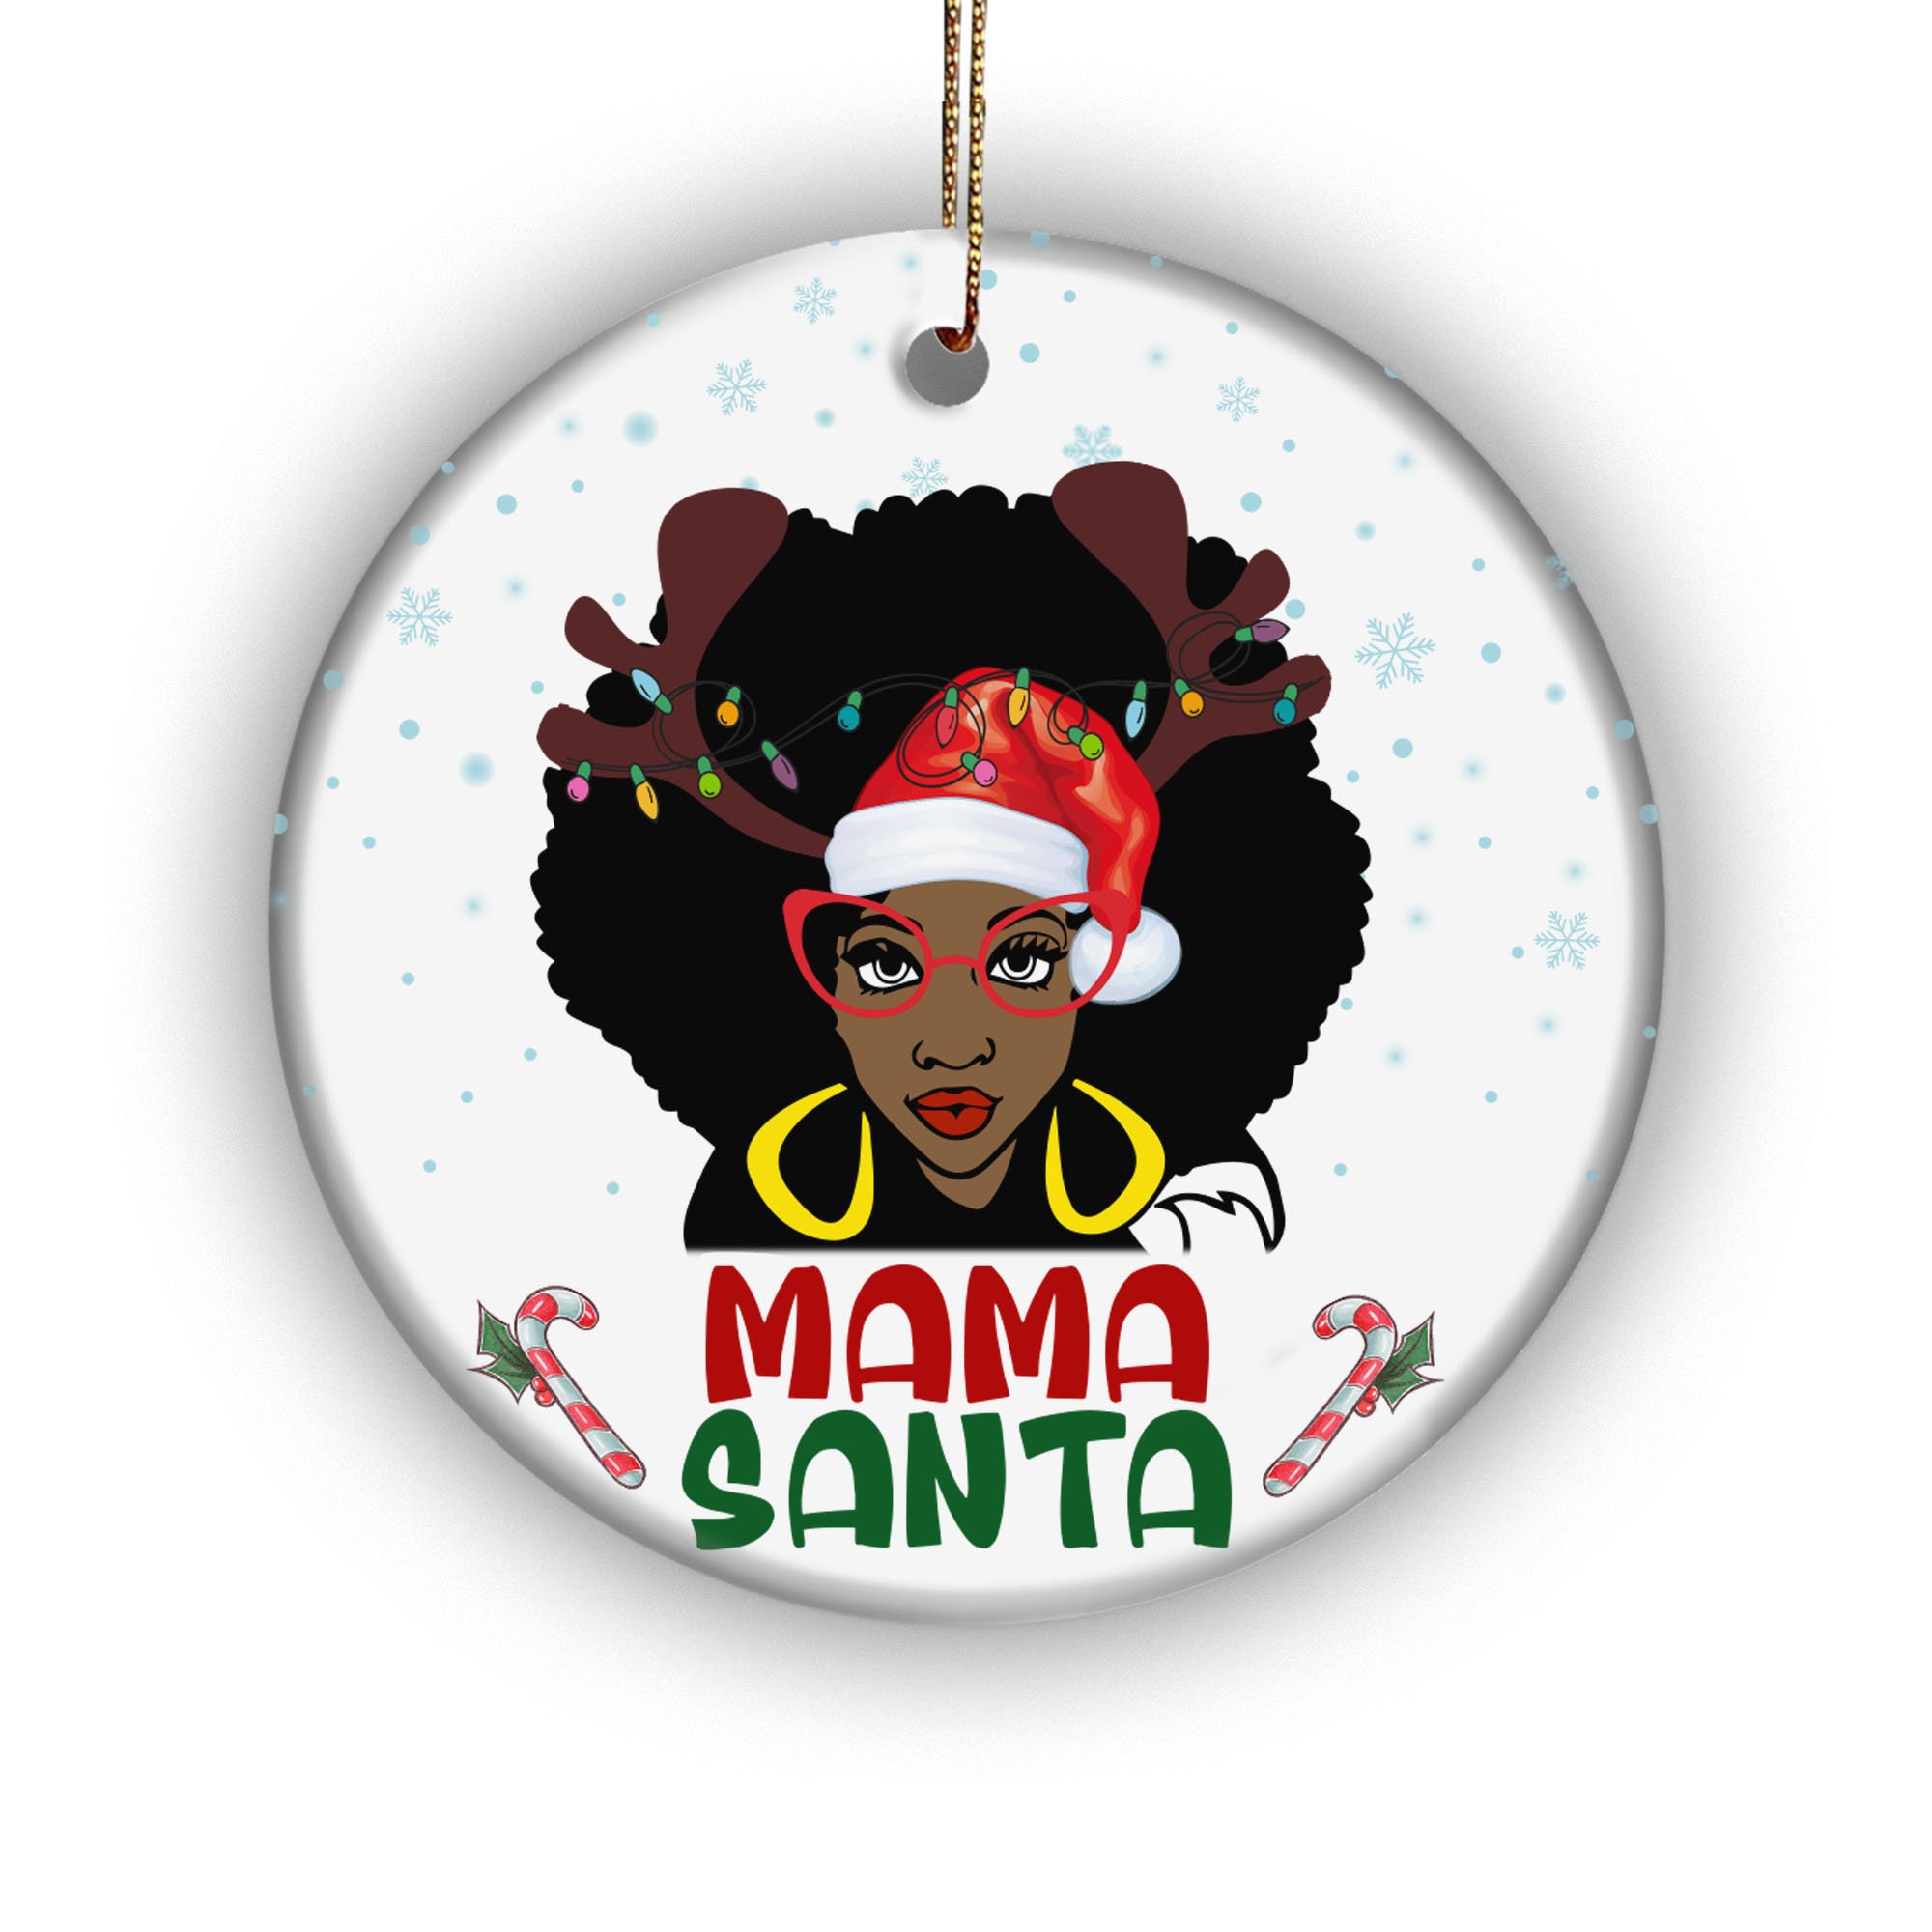 Mama Santa Black Woman Santa Claus Bauble Christmas Ornament | Etsy